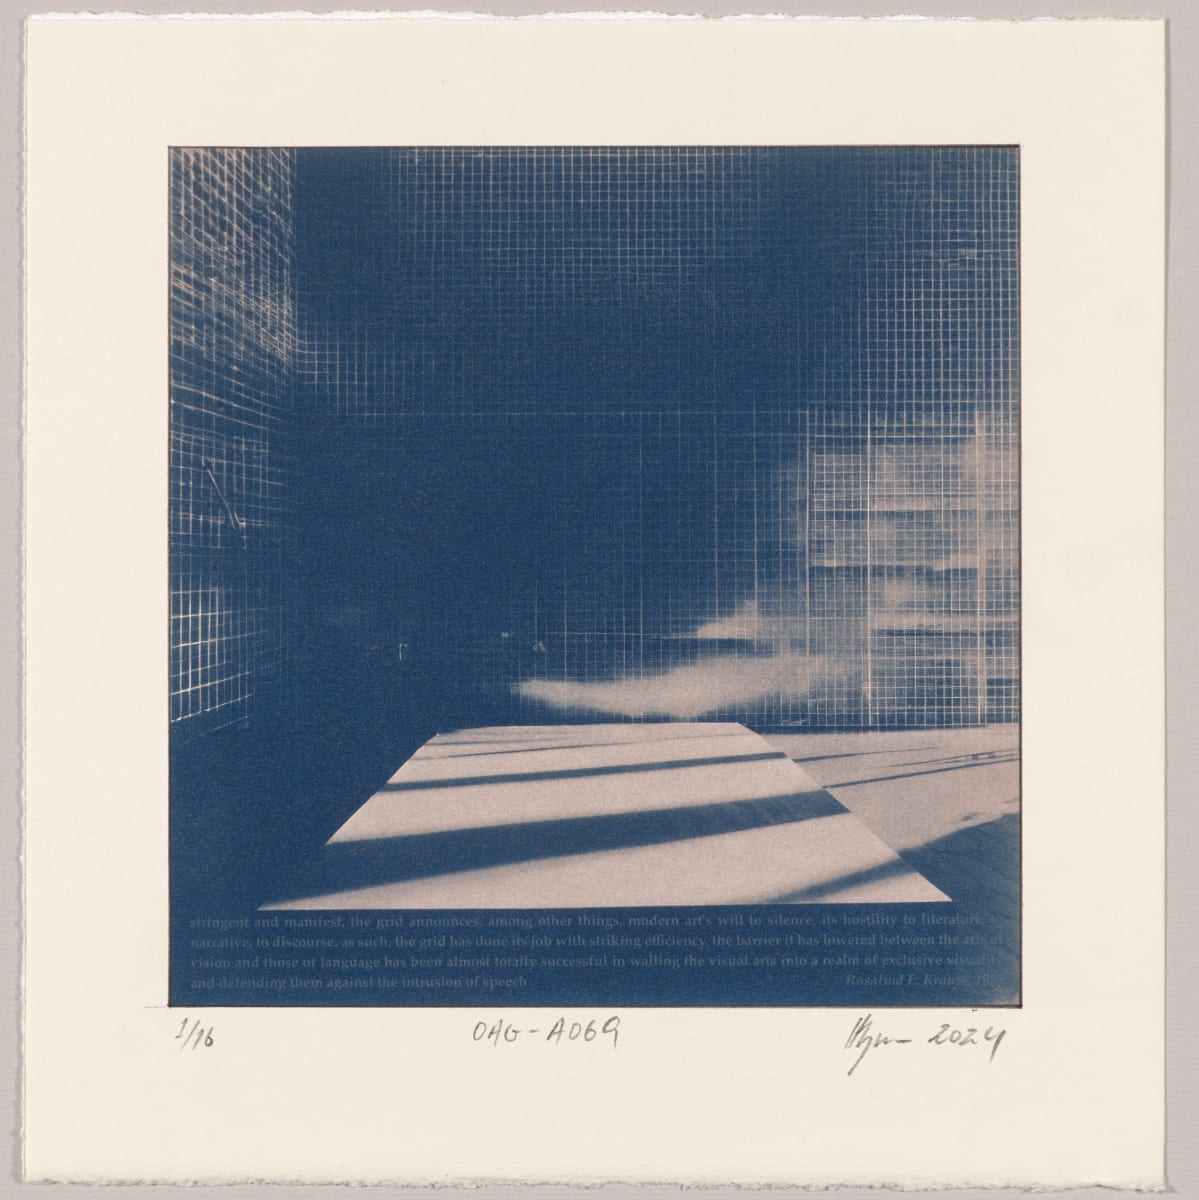 Originality of the avant-garde : Grid – #A069 1/16 by Hlynur Helgason